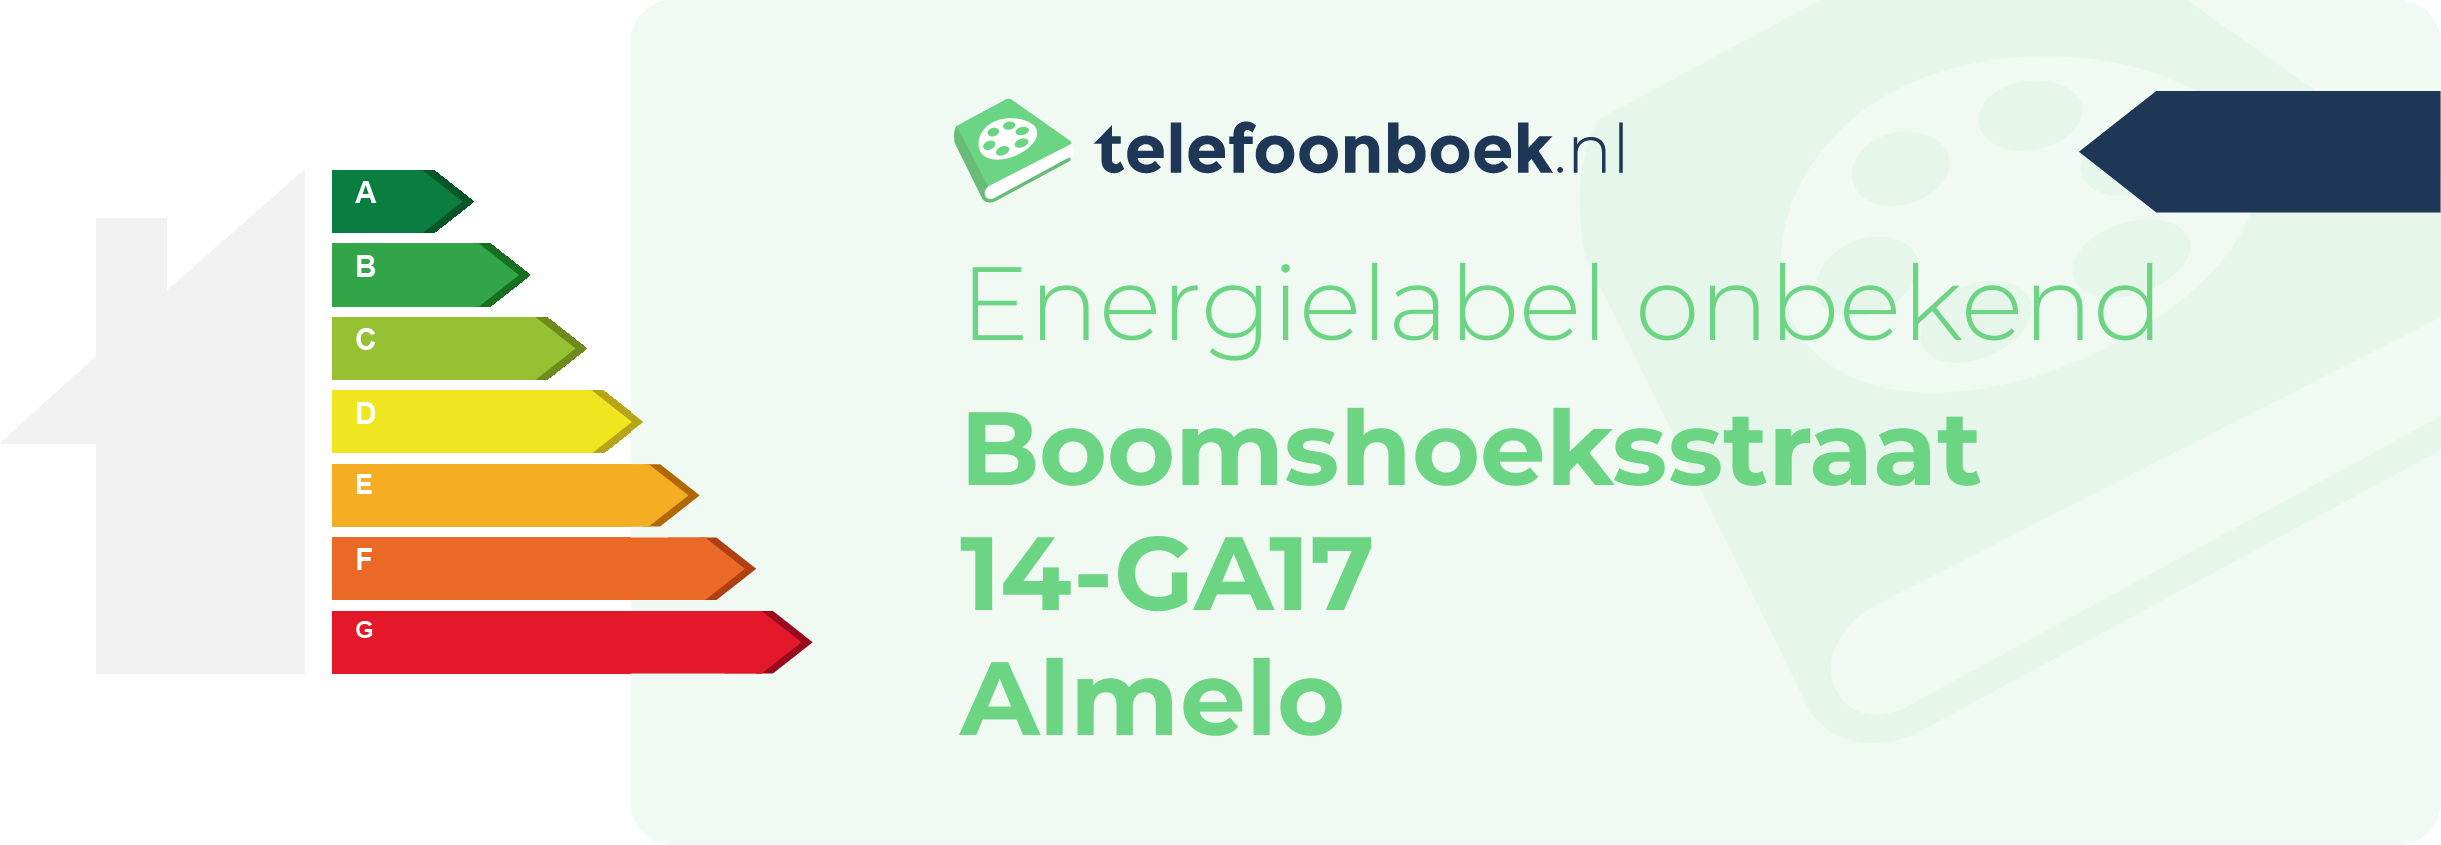 Energielabel Boomshoeksstraat 14-GA17 Almelo